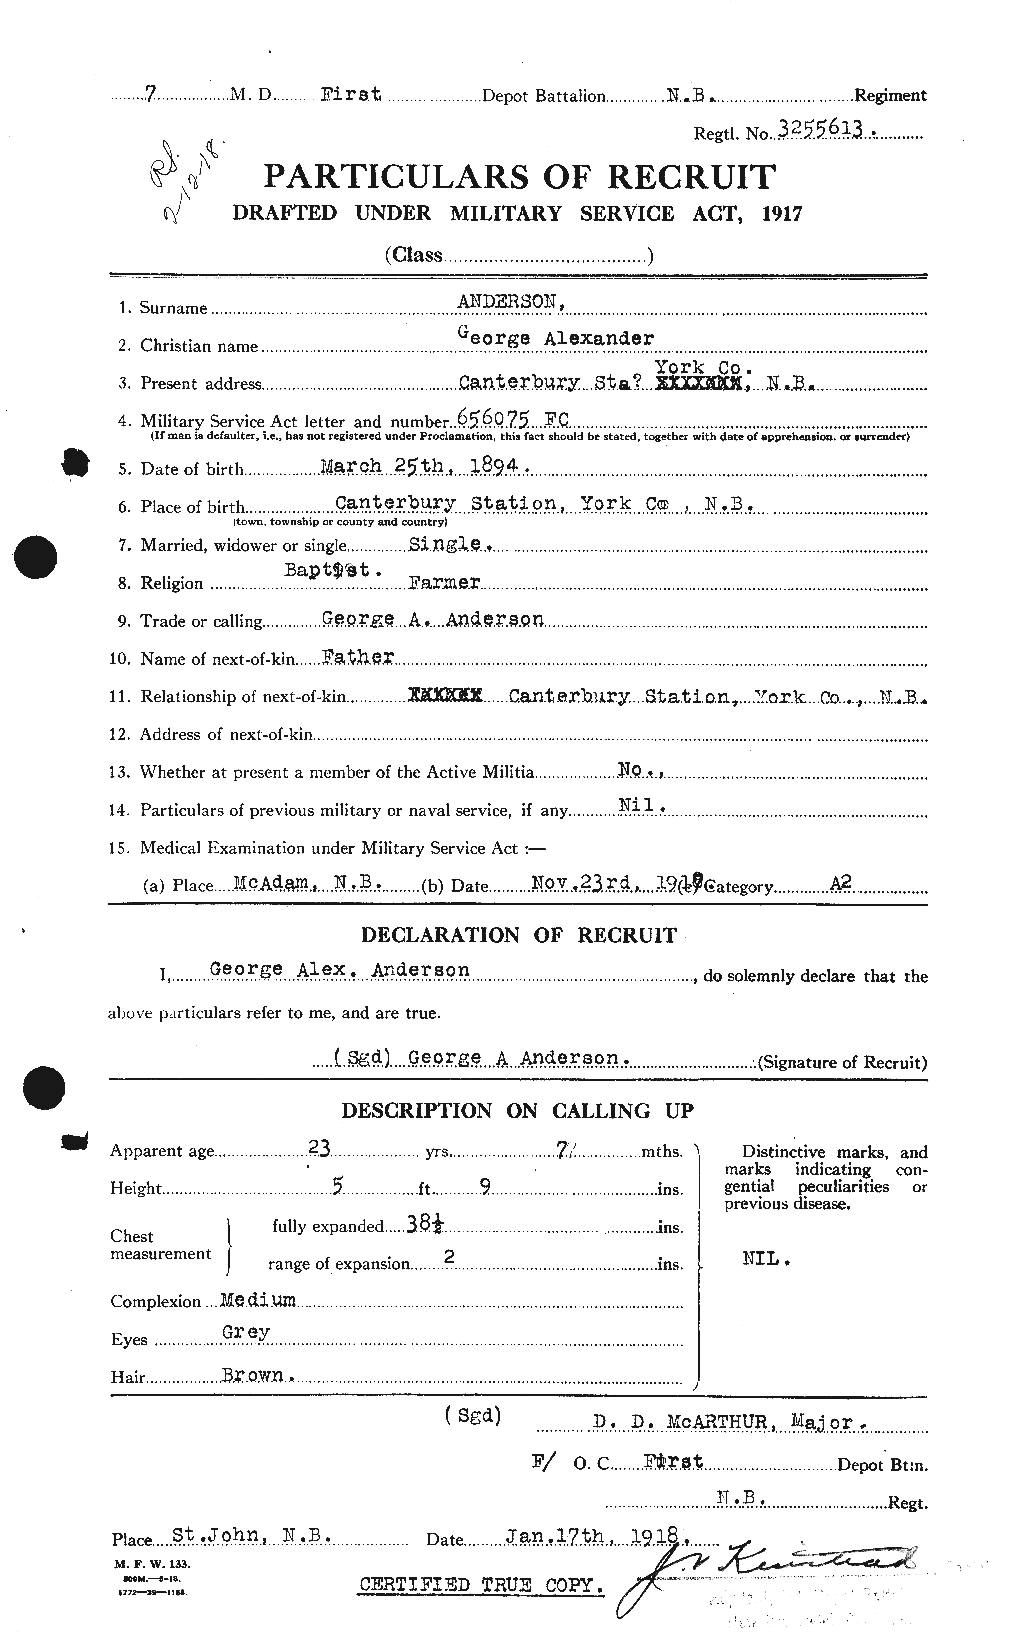 Dossiers du Personnel de la Première Guerre mondiale - CEC 209742a